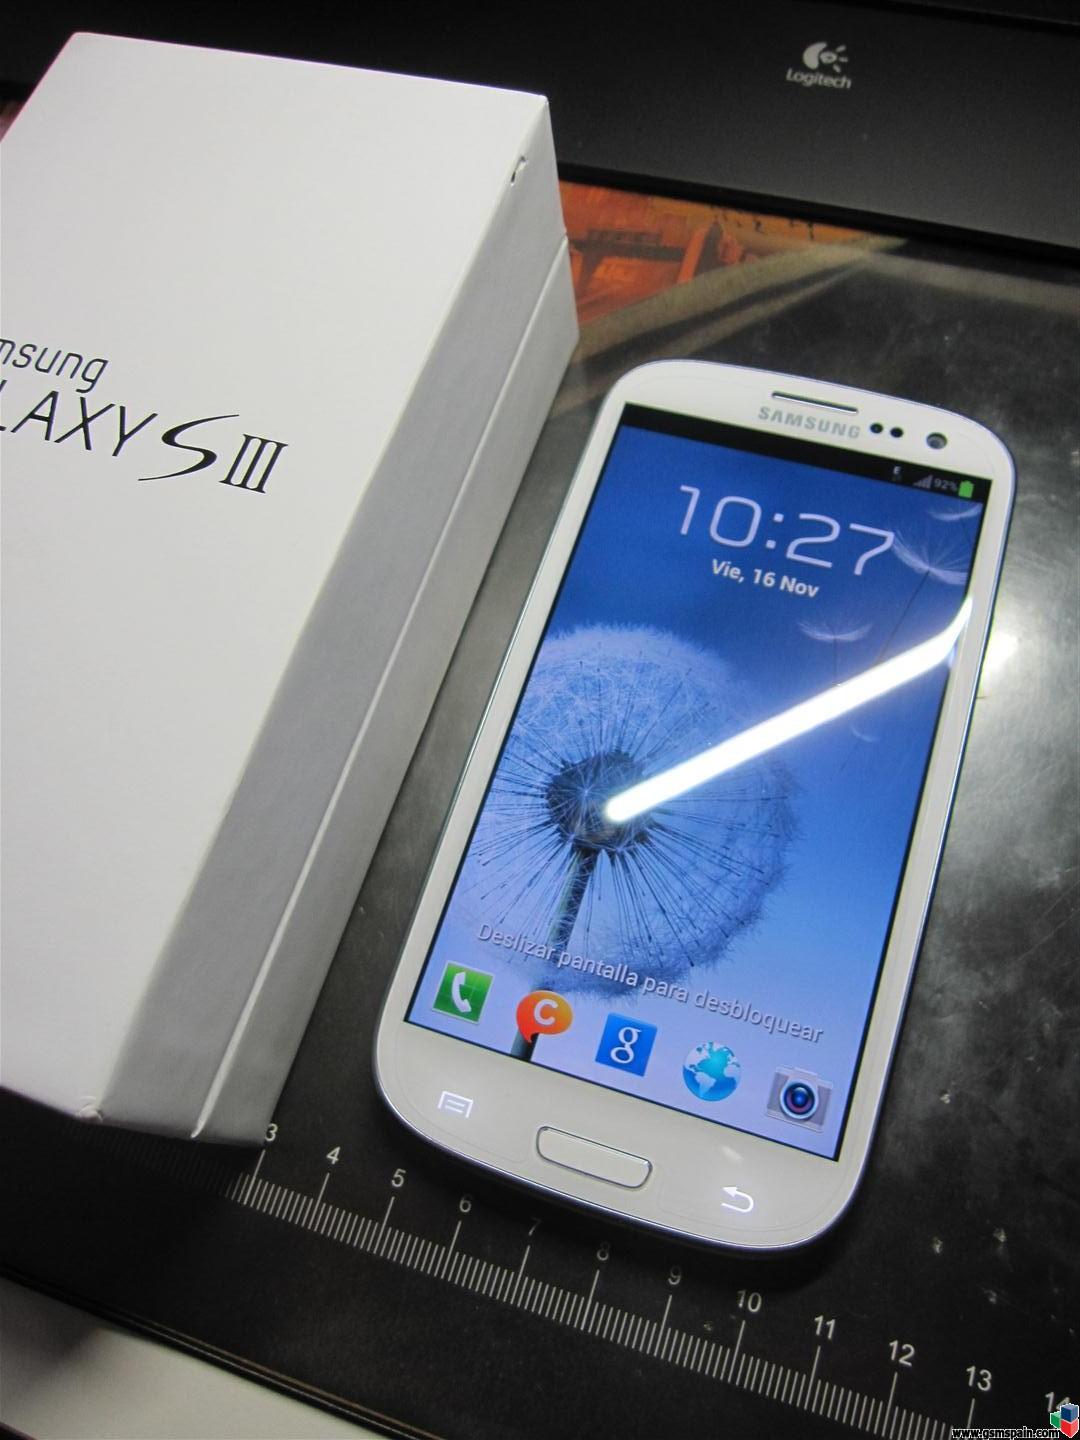 [VENDO] Samsung Galaxy S3 Blanco libre de origen 16GB+16GB en caja con factura.